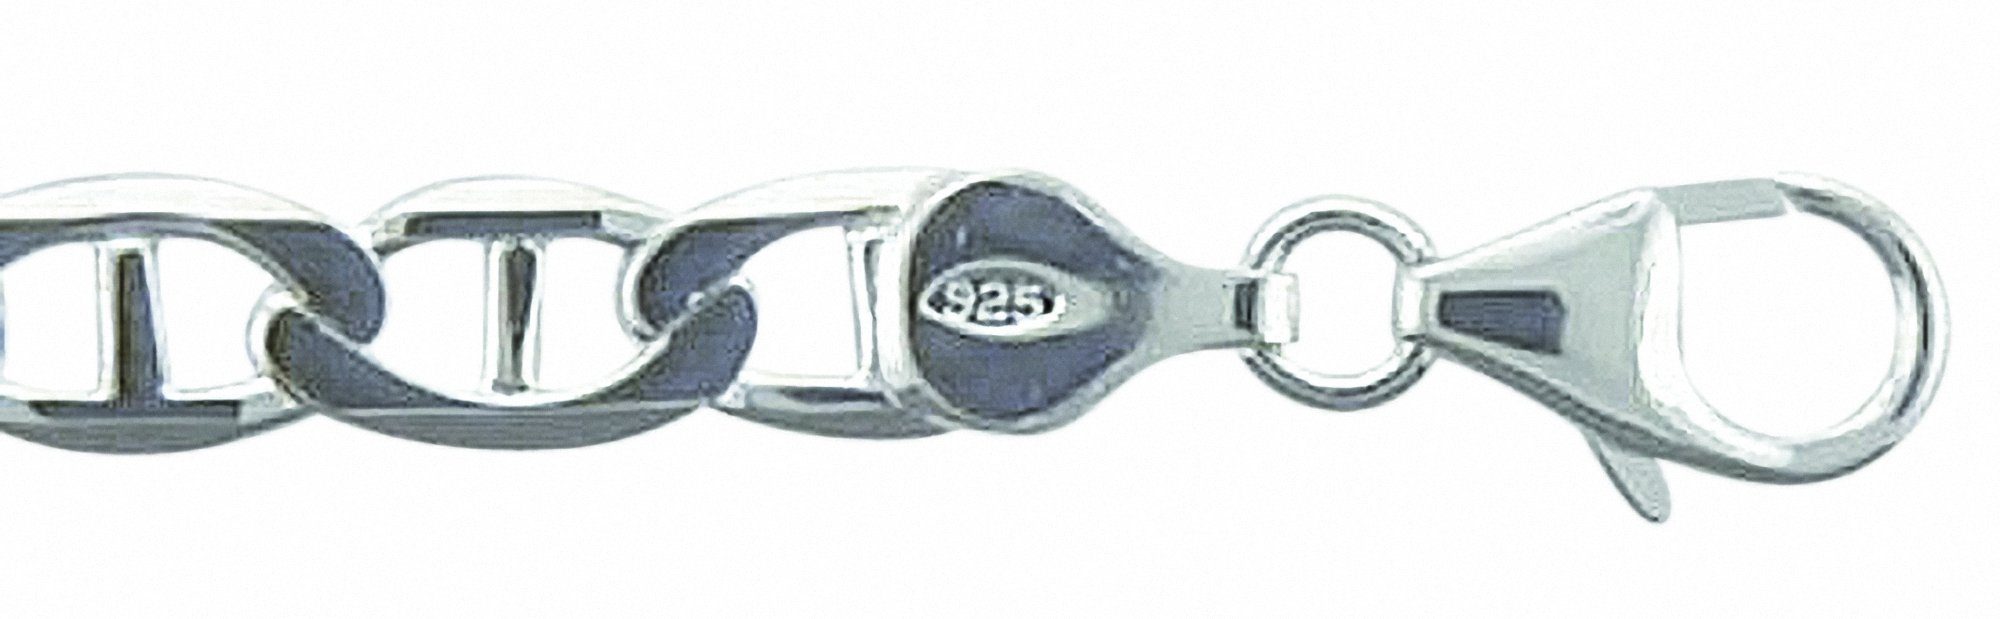 Damen Schmuck Adelia´s Silberarmband 925 Silber Stegpanzer Armband 19 cm, 19 cm 925 Sterling Silber Stegpanzerkette Silberschmuc